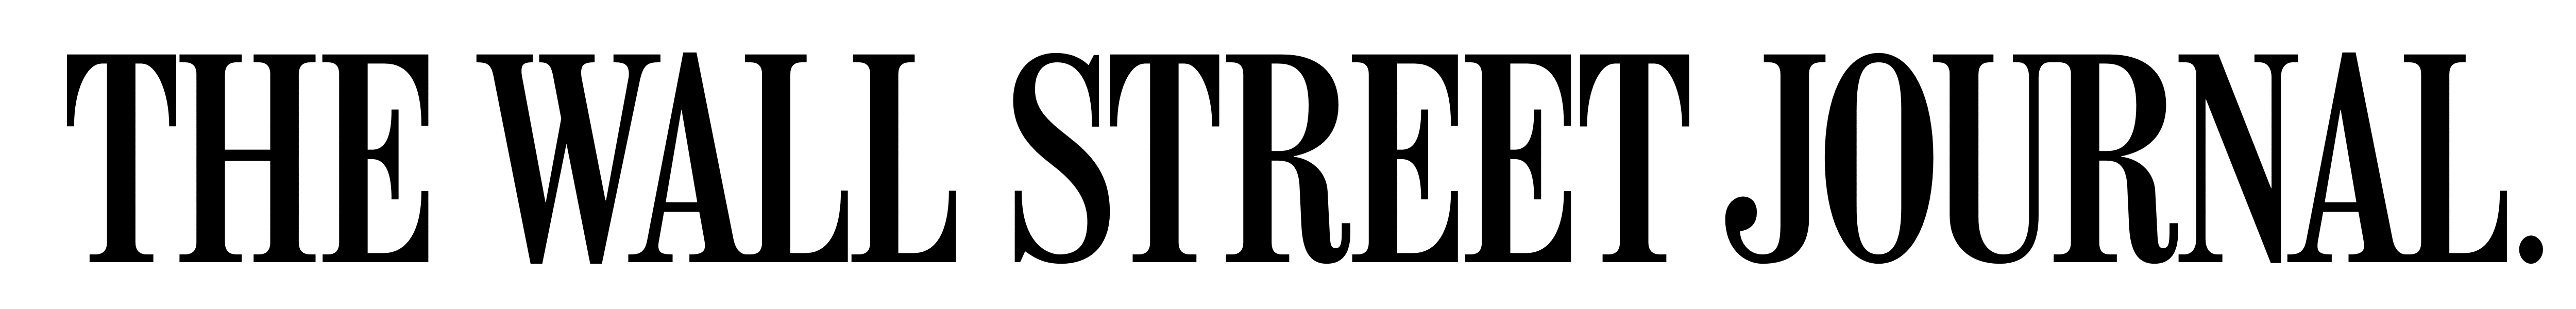 Online newspaper, The Wall Street Journal logo